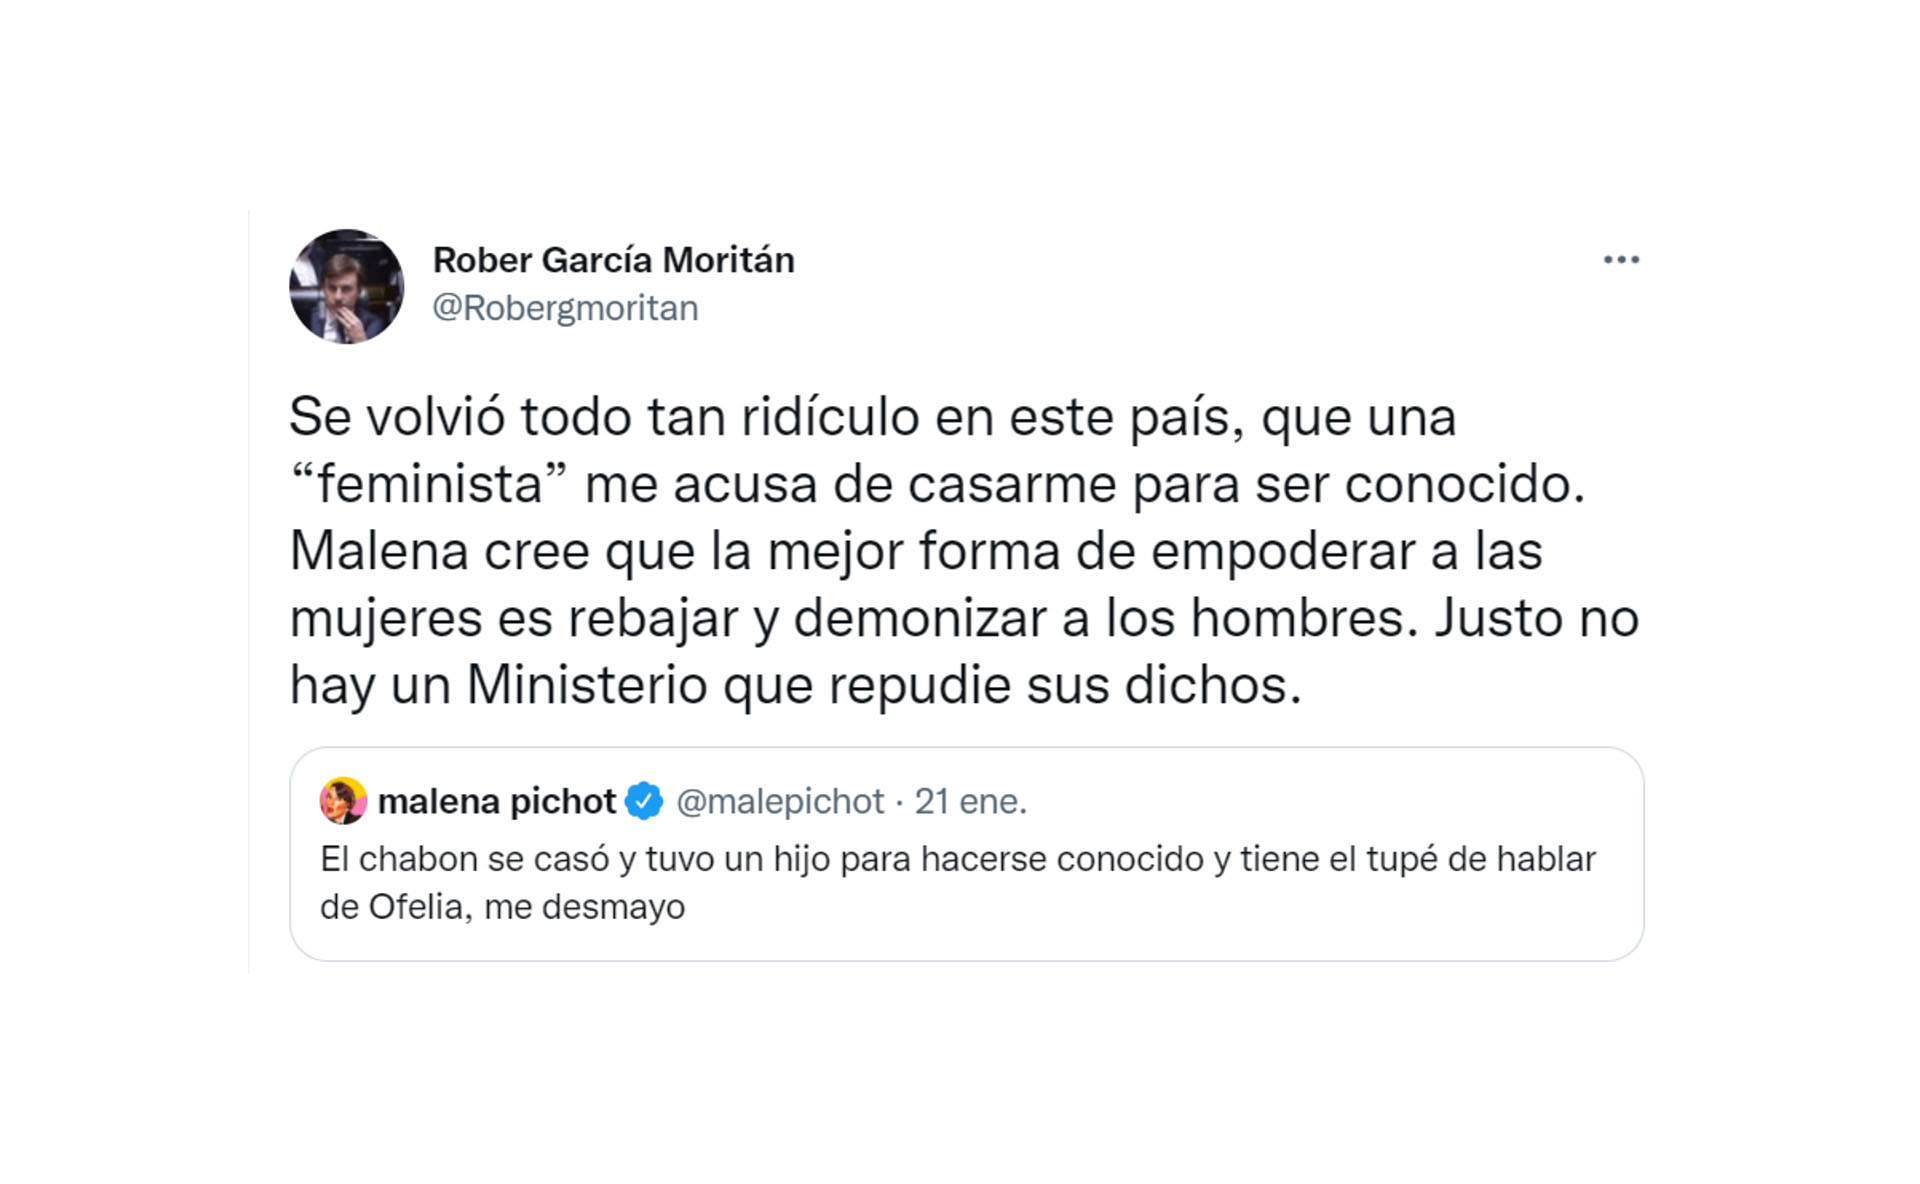 La opinión de Malena Pichot y la respuesta de Roberto García Moritán 